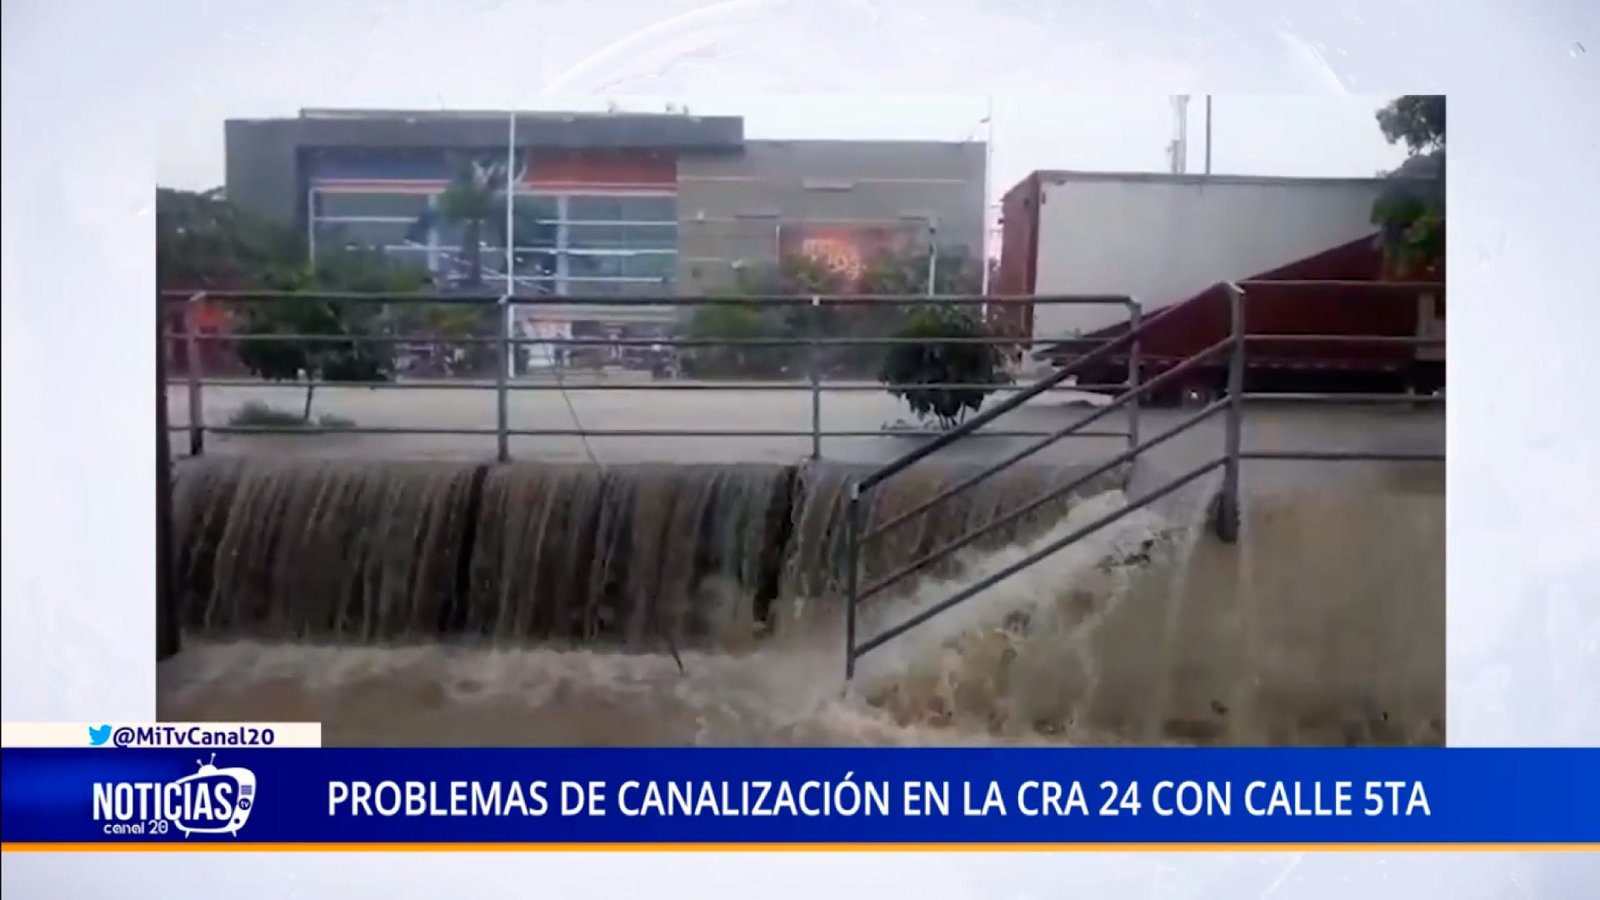 PROBLEMAS DE CANALIZACIÓN EN LA CRA 24 CON CALLE 5TA